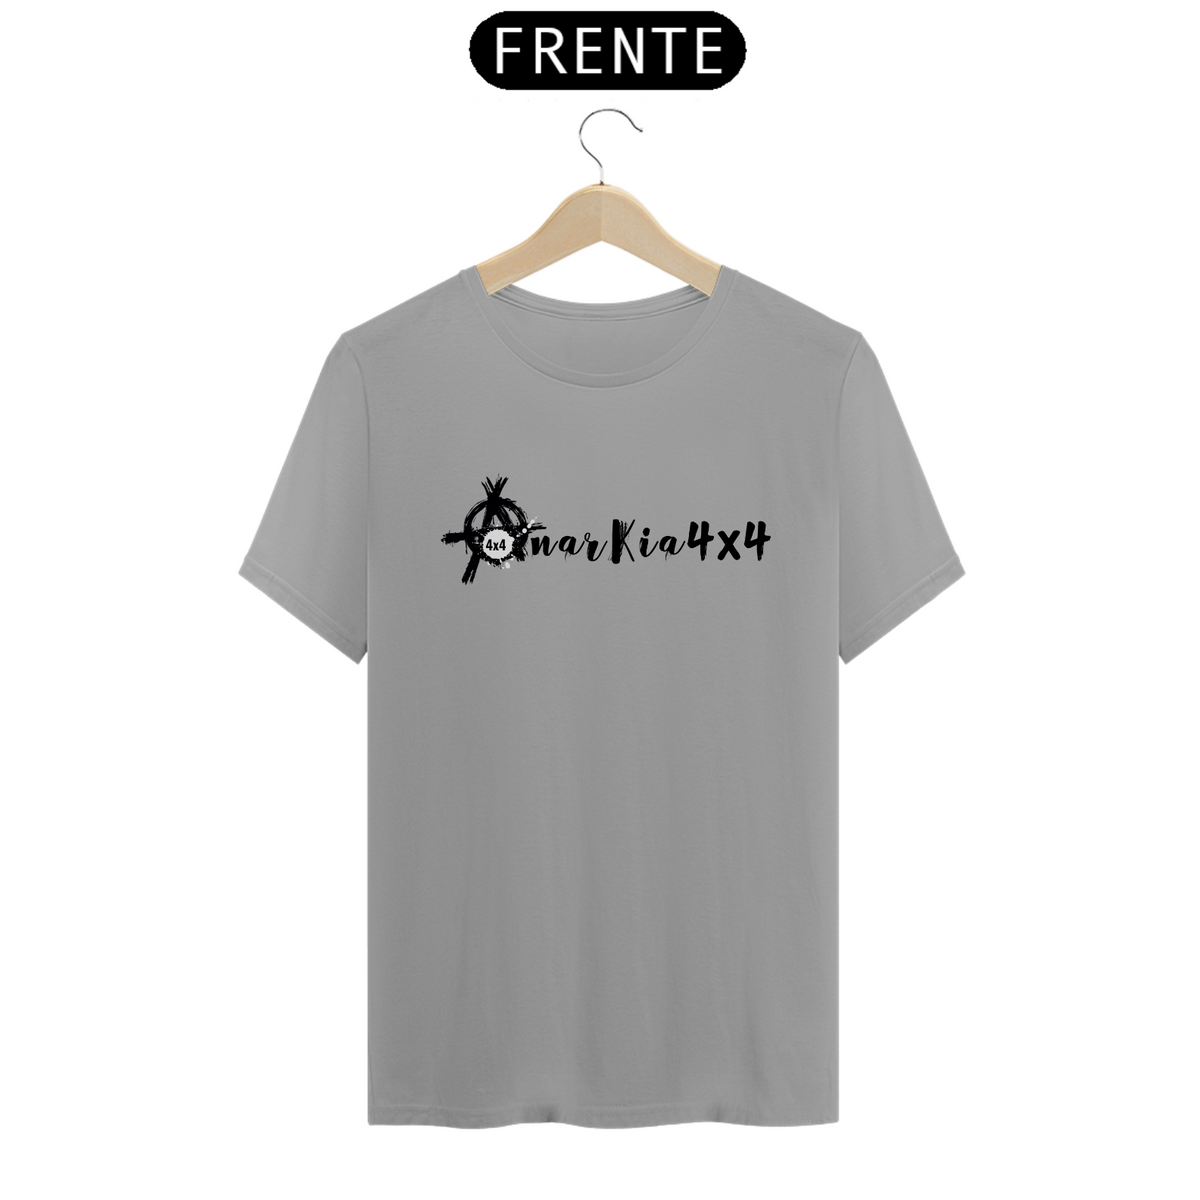 Nome do produto: T-shirt Quality - Anarkia4x4